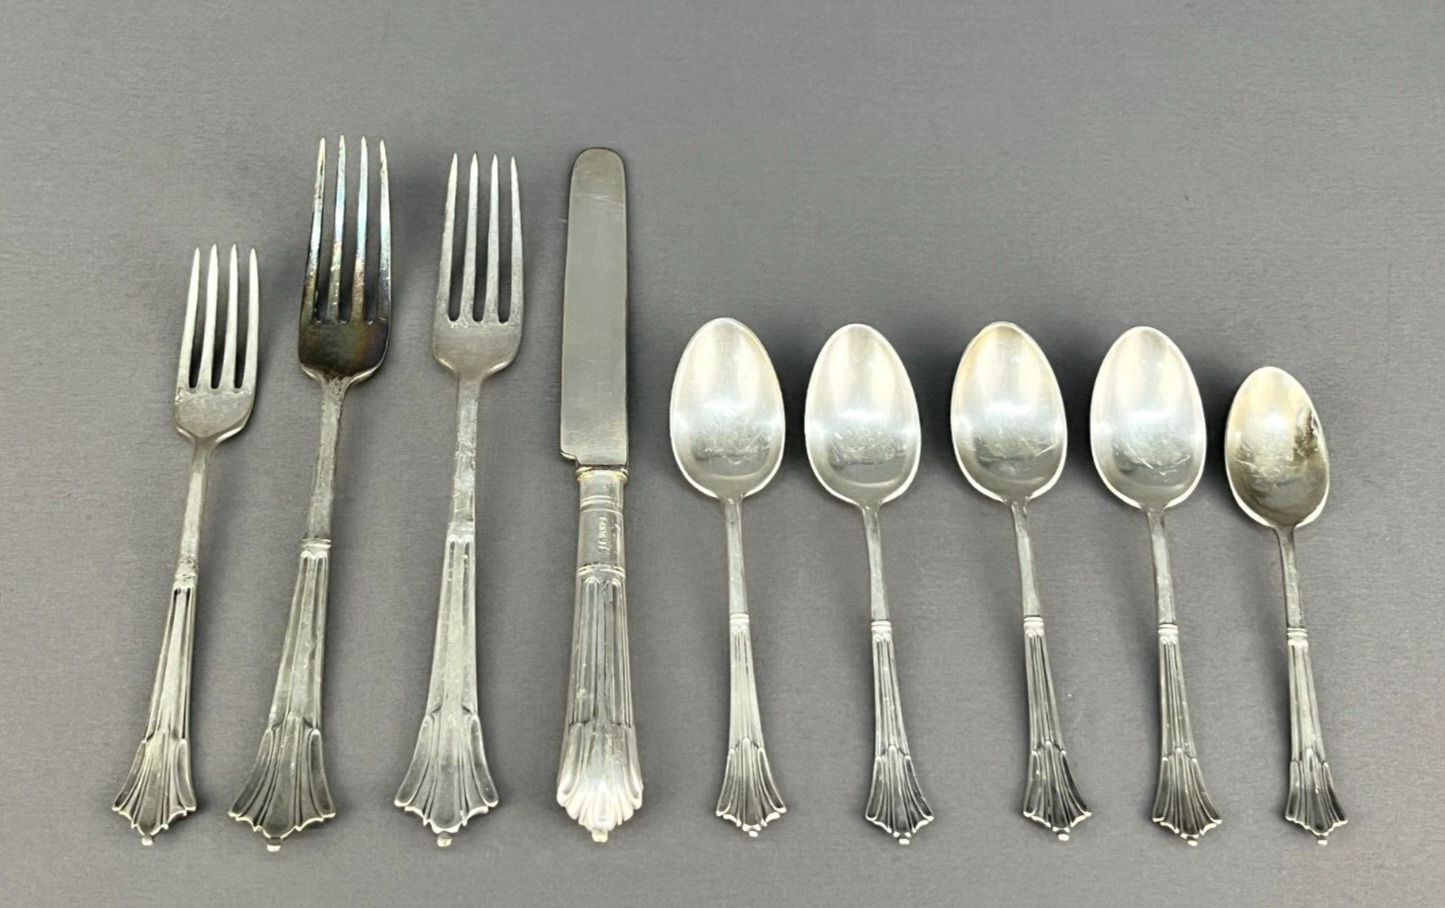 9 Pc Set Santa Fe Railroad Dining Car Flatware Set, Knife, 3 Forks, 5 Spoons